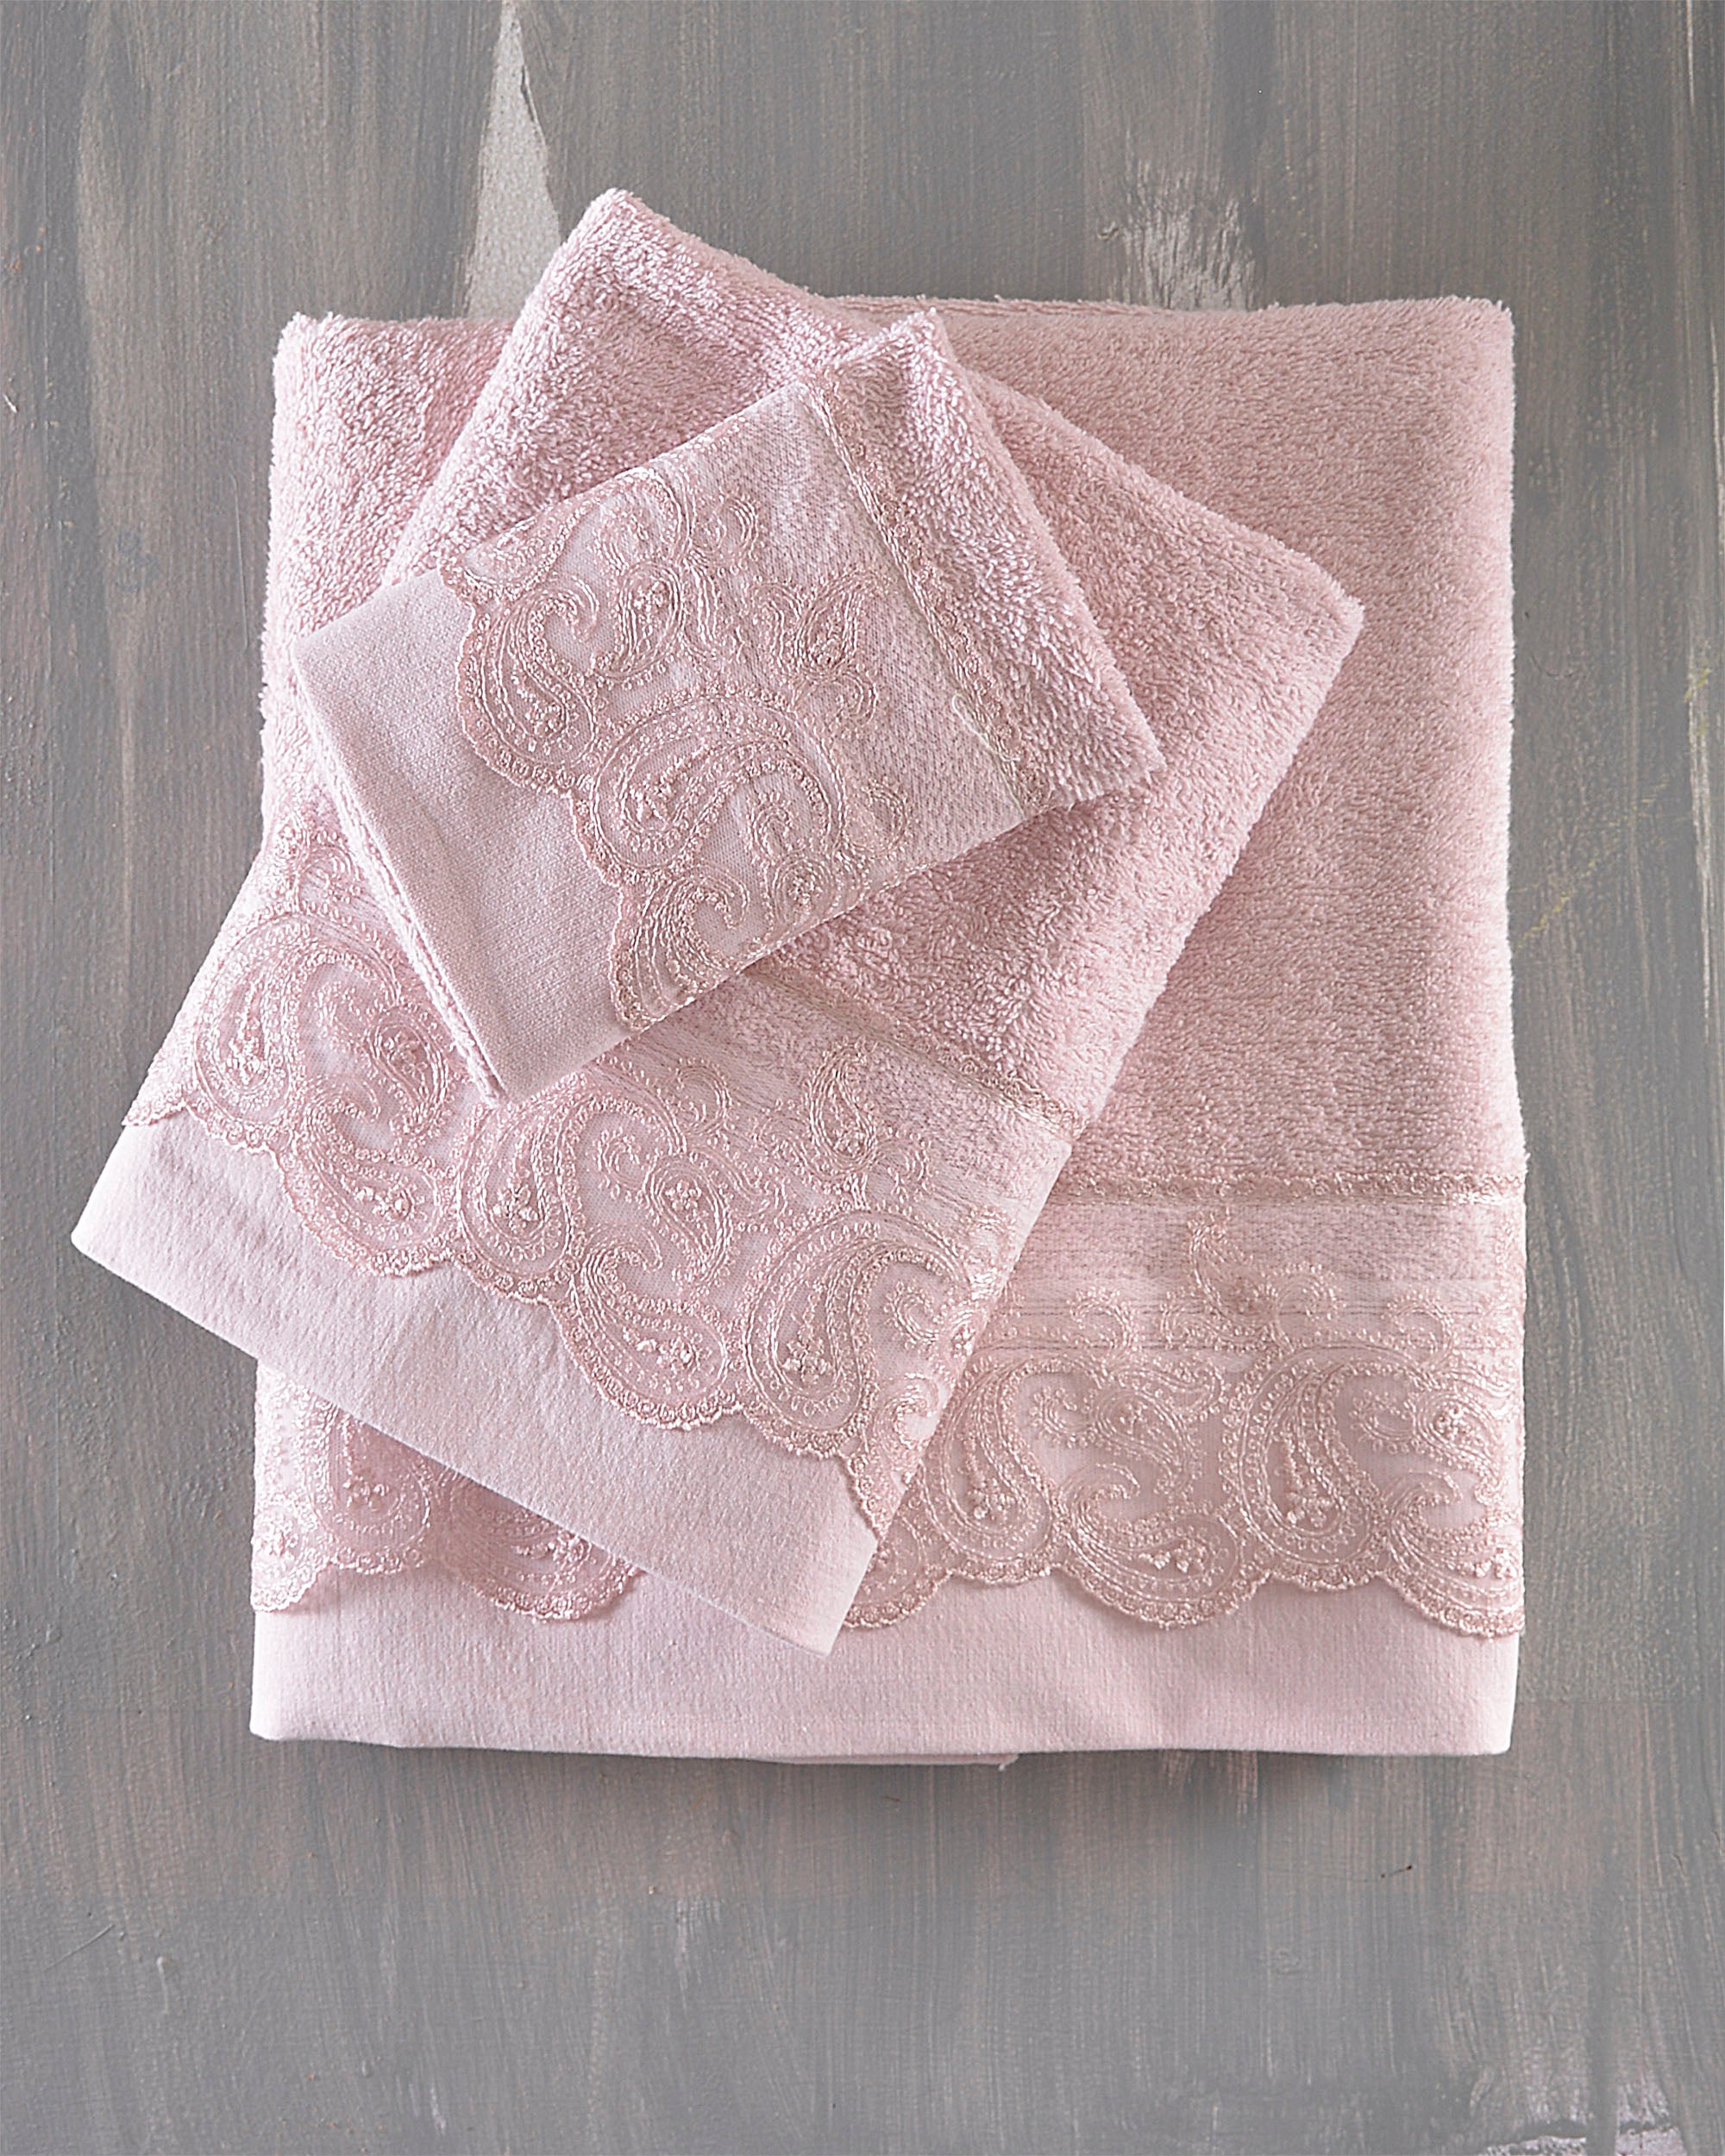 ANIKA - Σετ πετσέτες 3 τεμ. Σετ 3 Τεμαχίων Σε Κουτί Ροζ 30 x 50, 50 x 90, 80 x 150 από την εταιρεία Rythmos Home